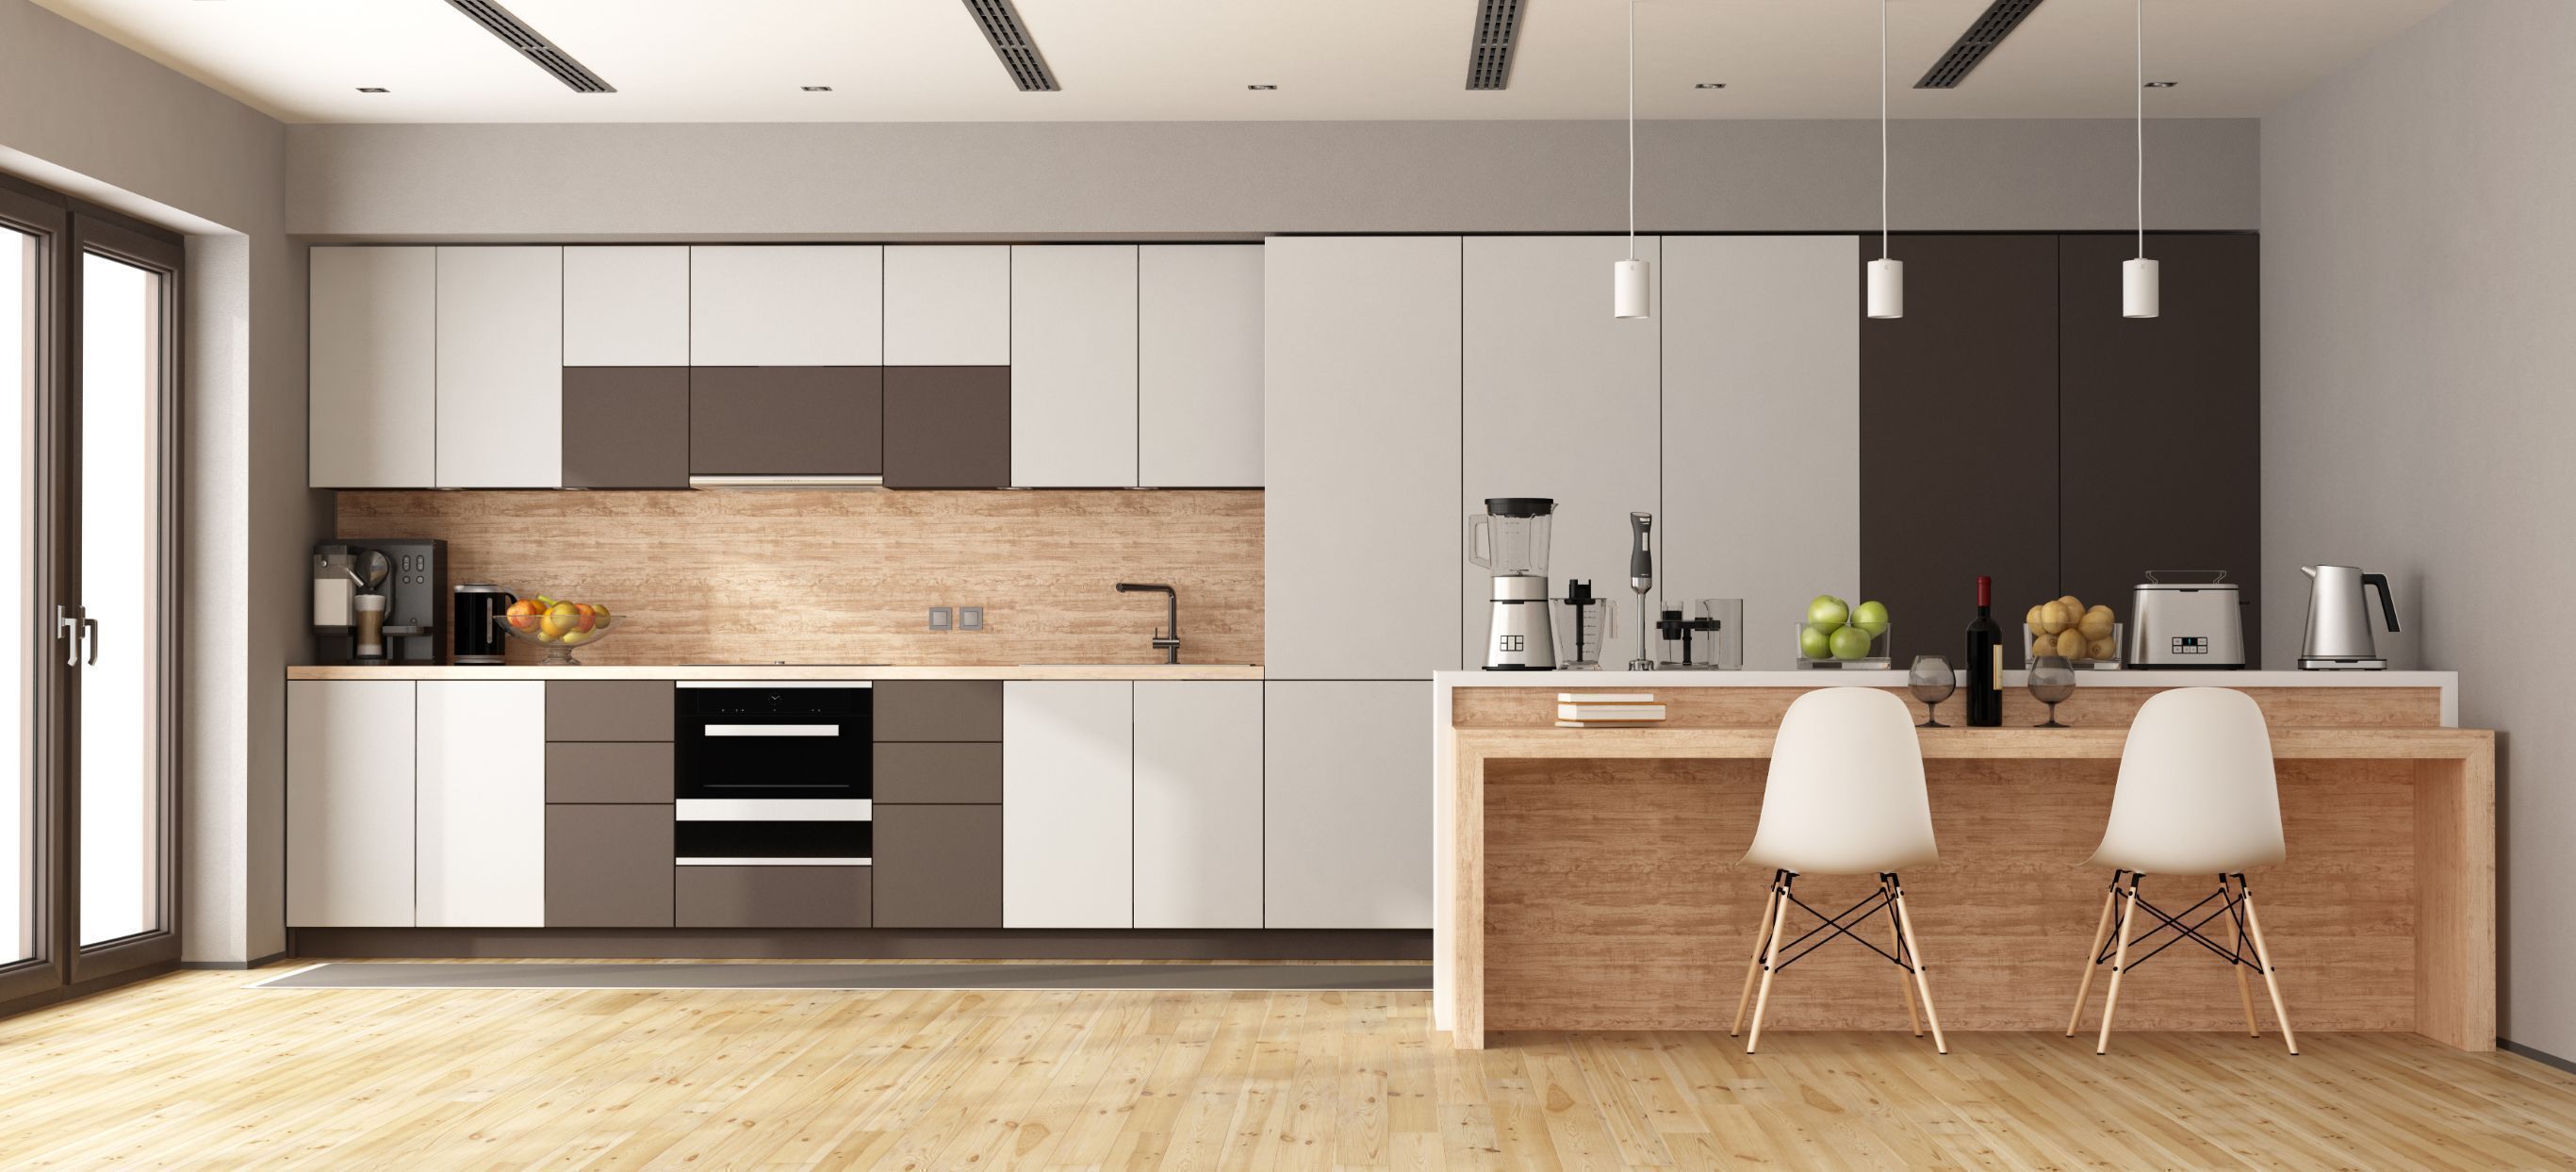 16 open kitchen design ideas - latest kitchen decoration designs